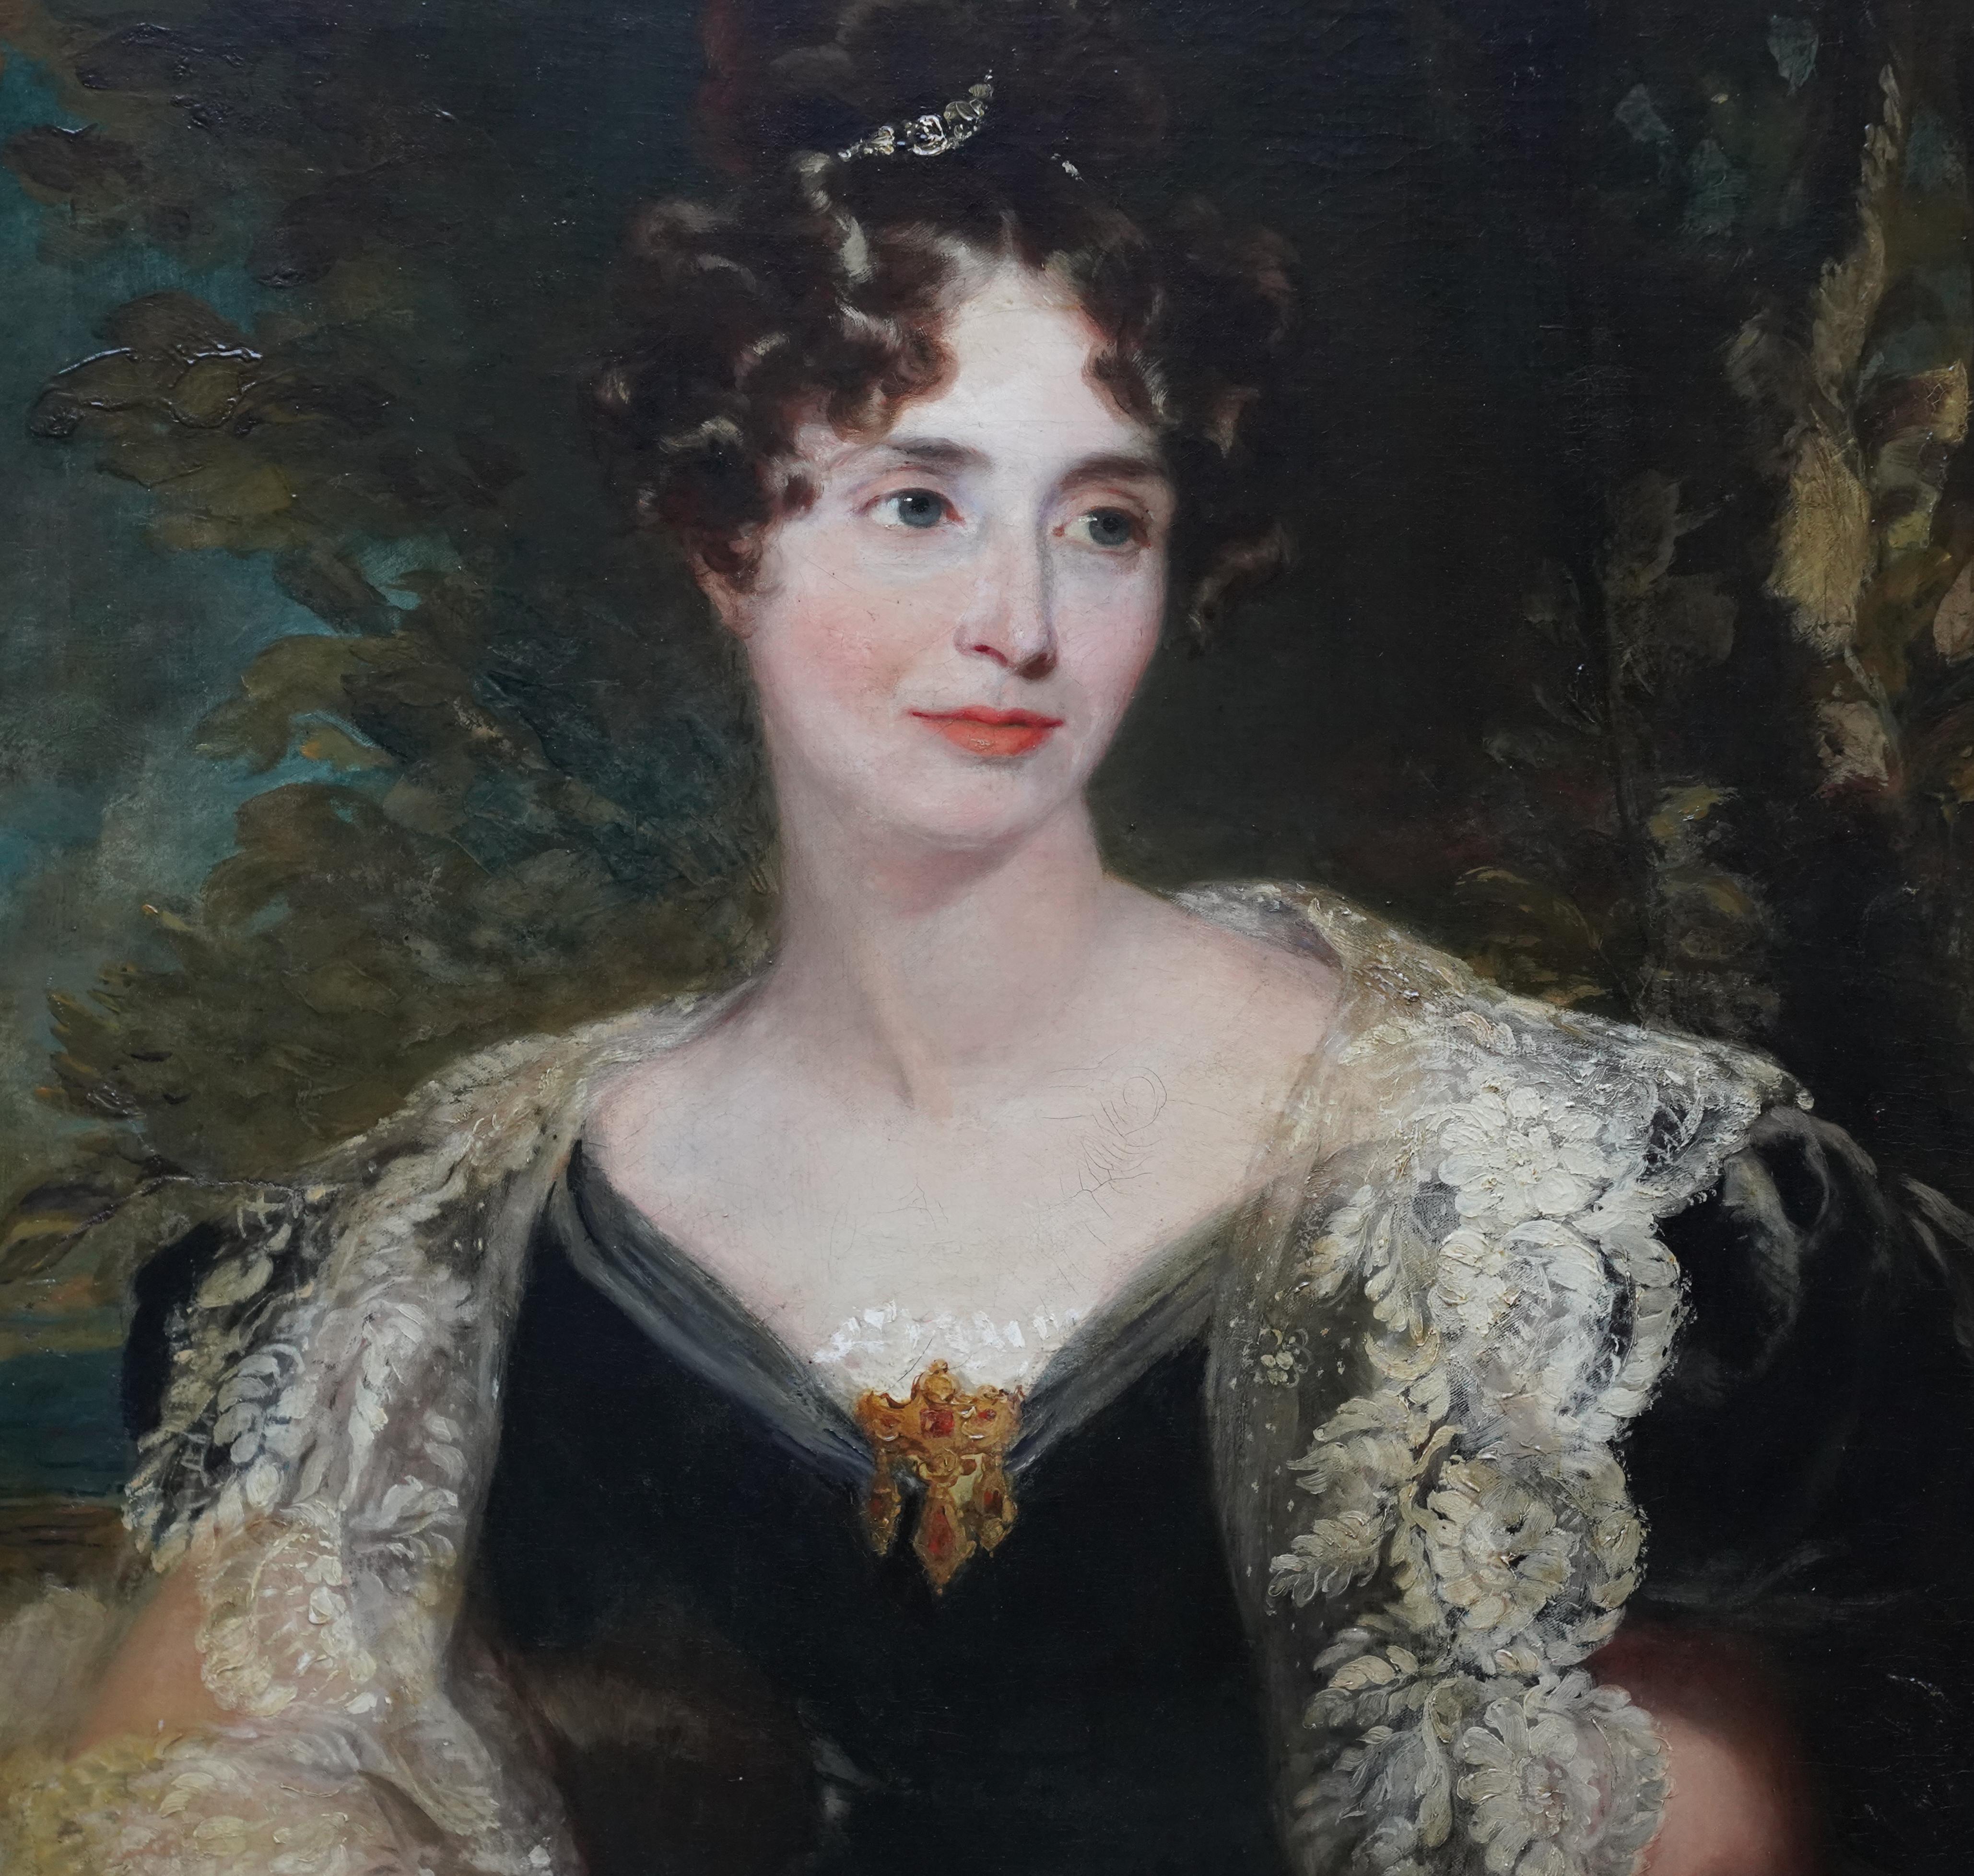 Portrait of Harriet Cooper - British Victorian art female portrait oil painting - Black Portrait Painting by Louis William Desanges